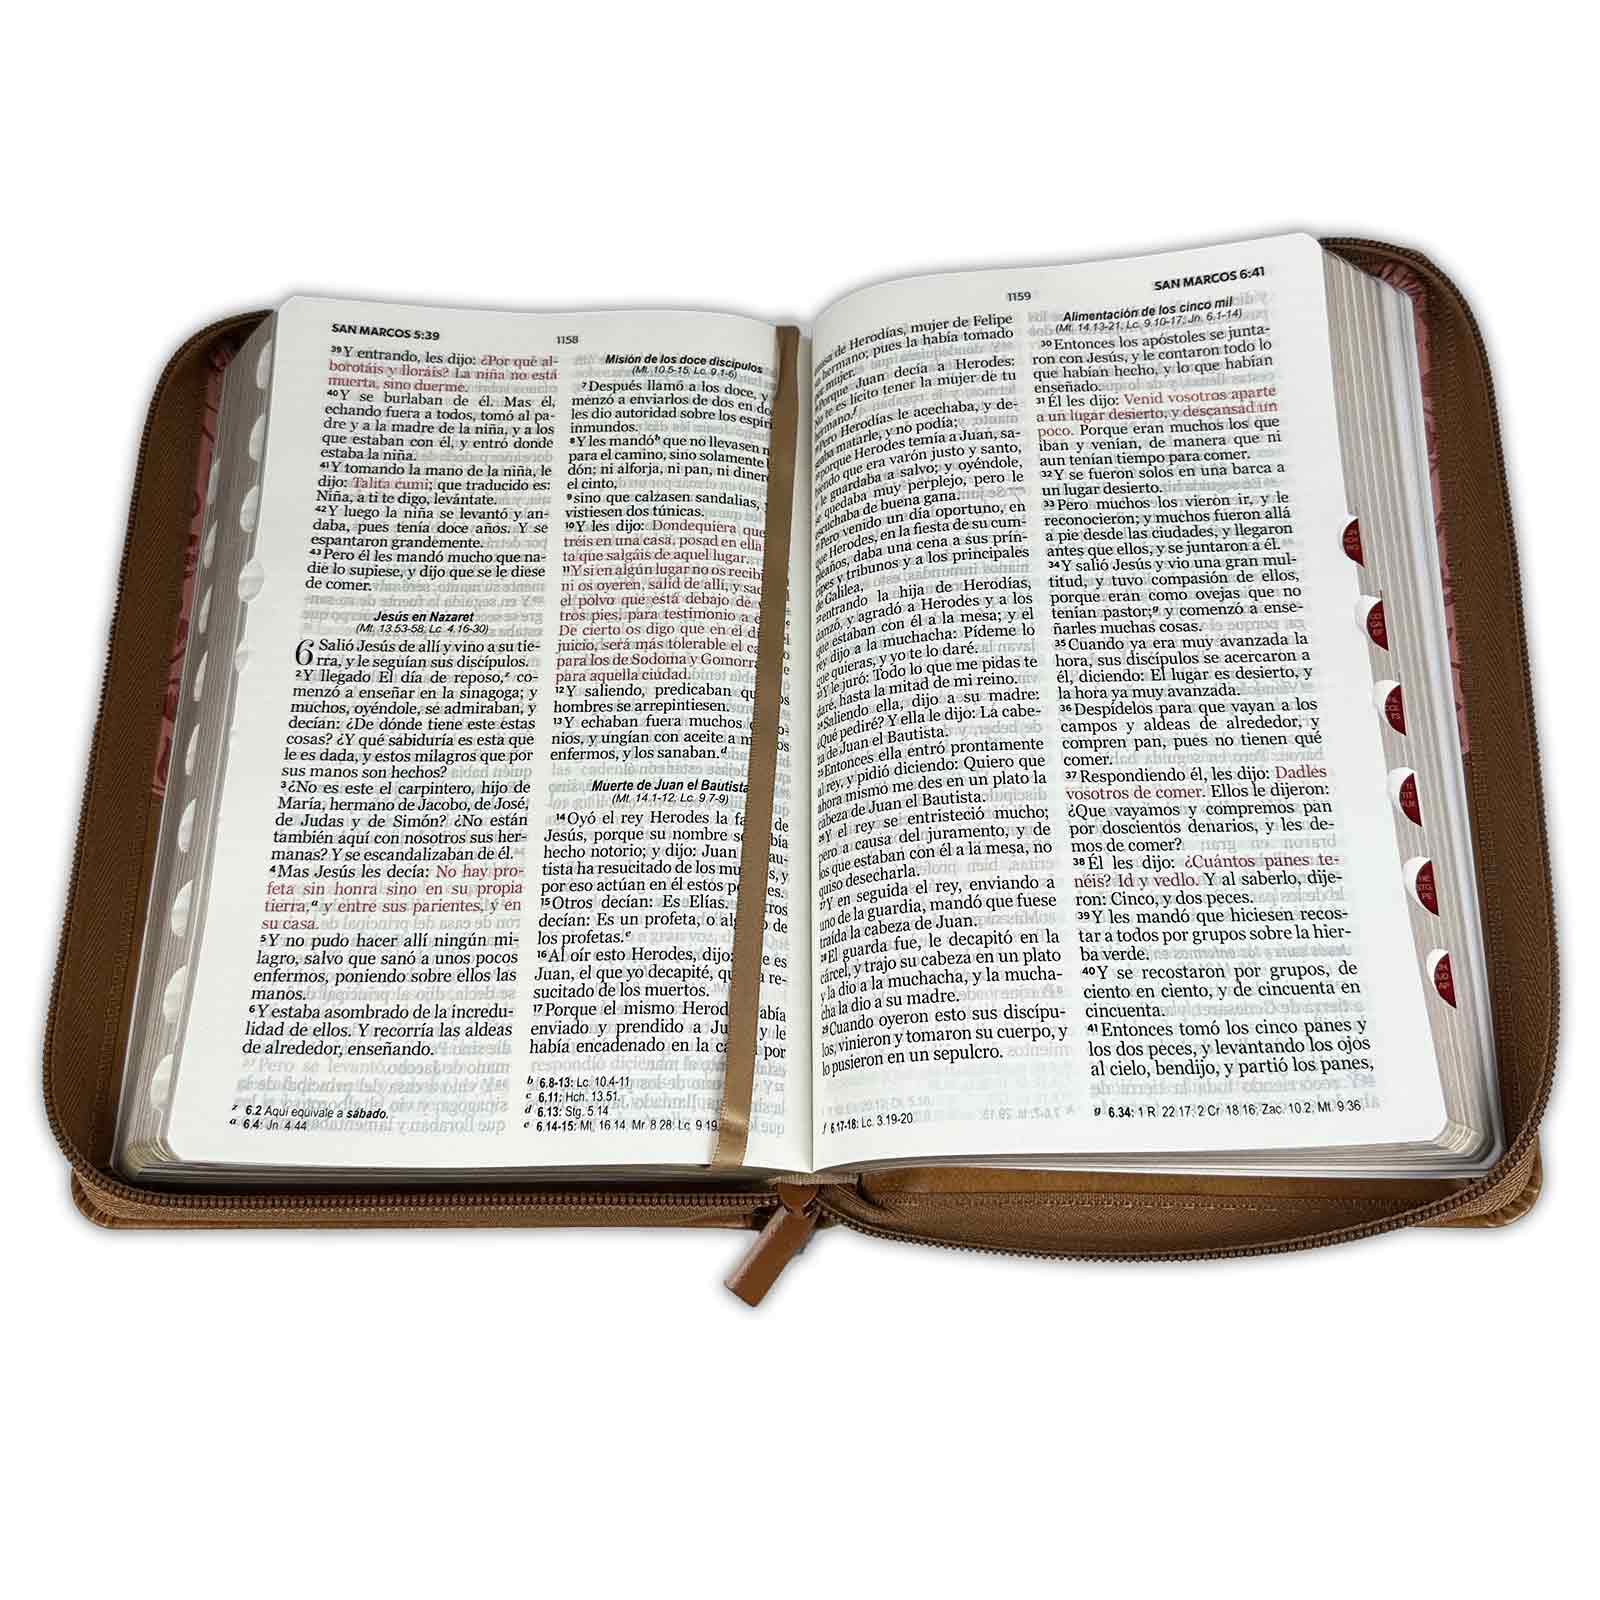 Biblia para Mujer Letra Grande 12 puntos Reina Valera 1960 imitacion piel rosado clasico con indice